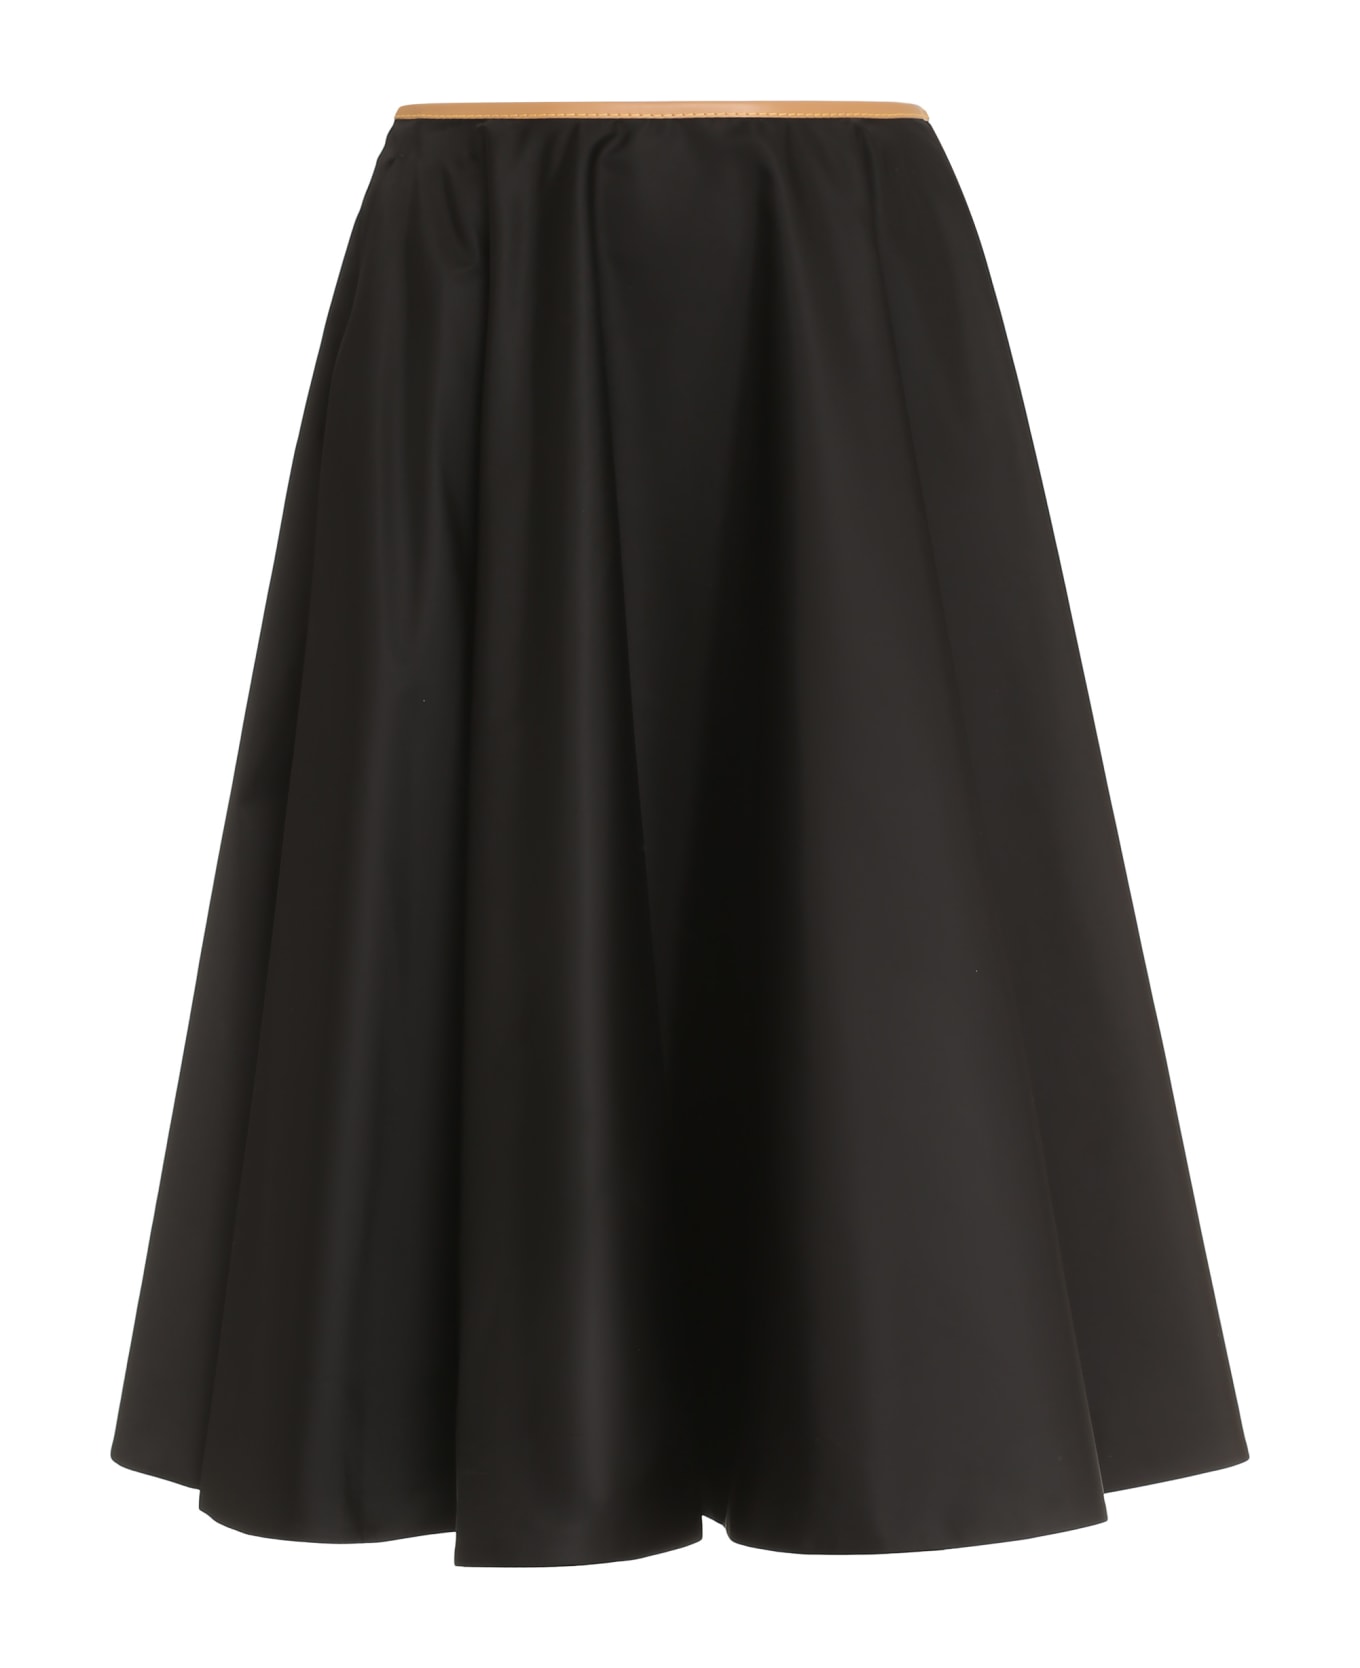 Prada Technical Fabric Skirt - Nero